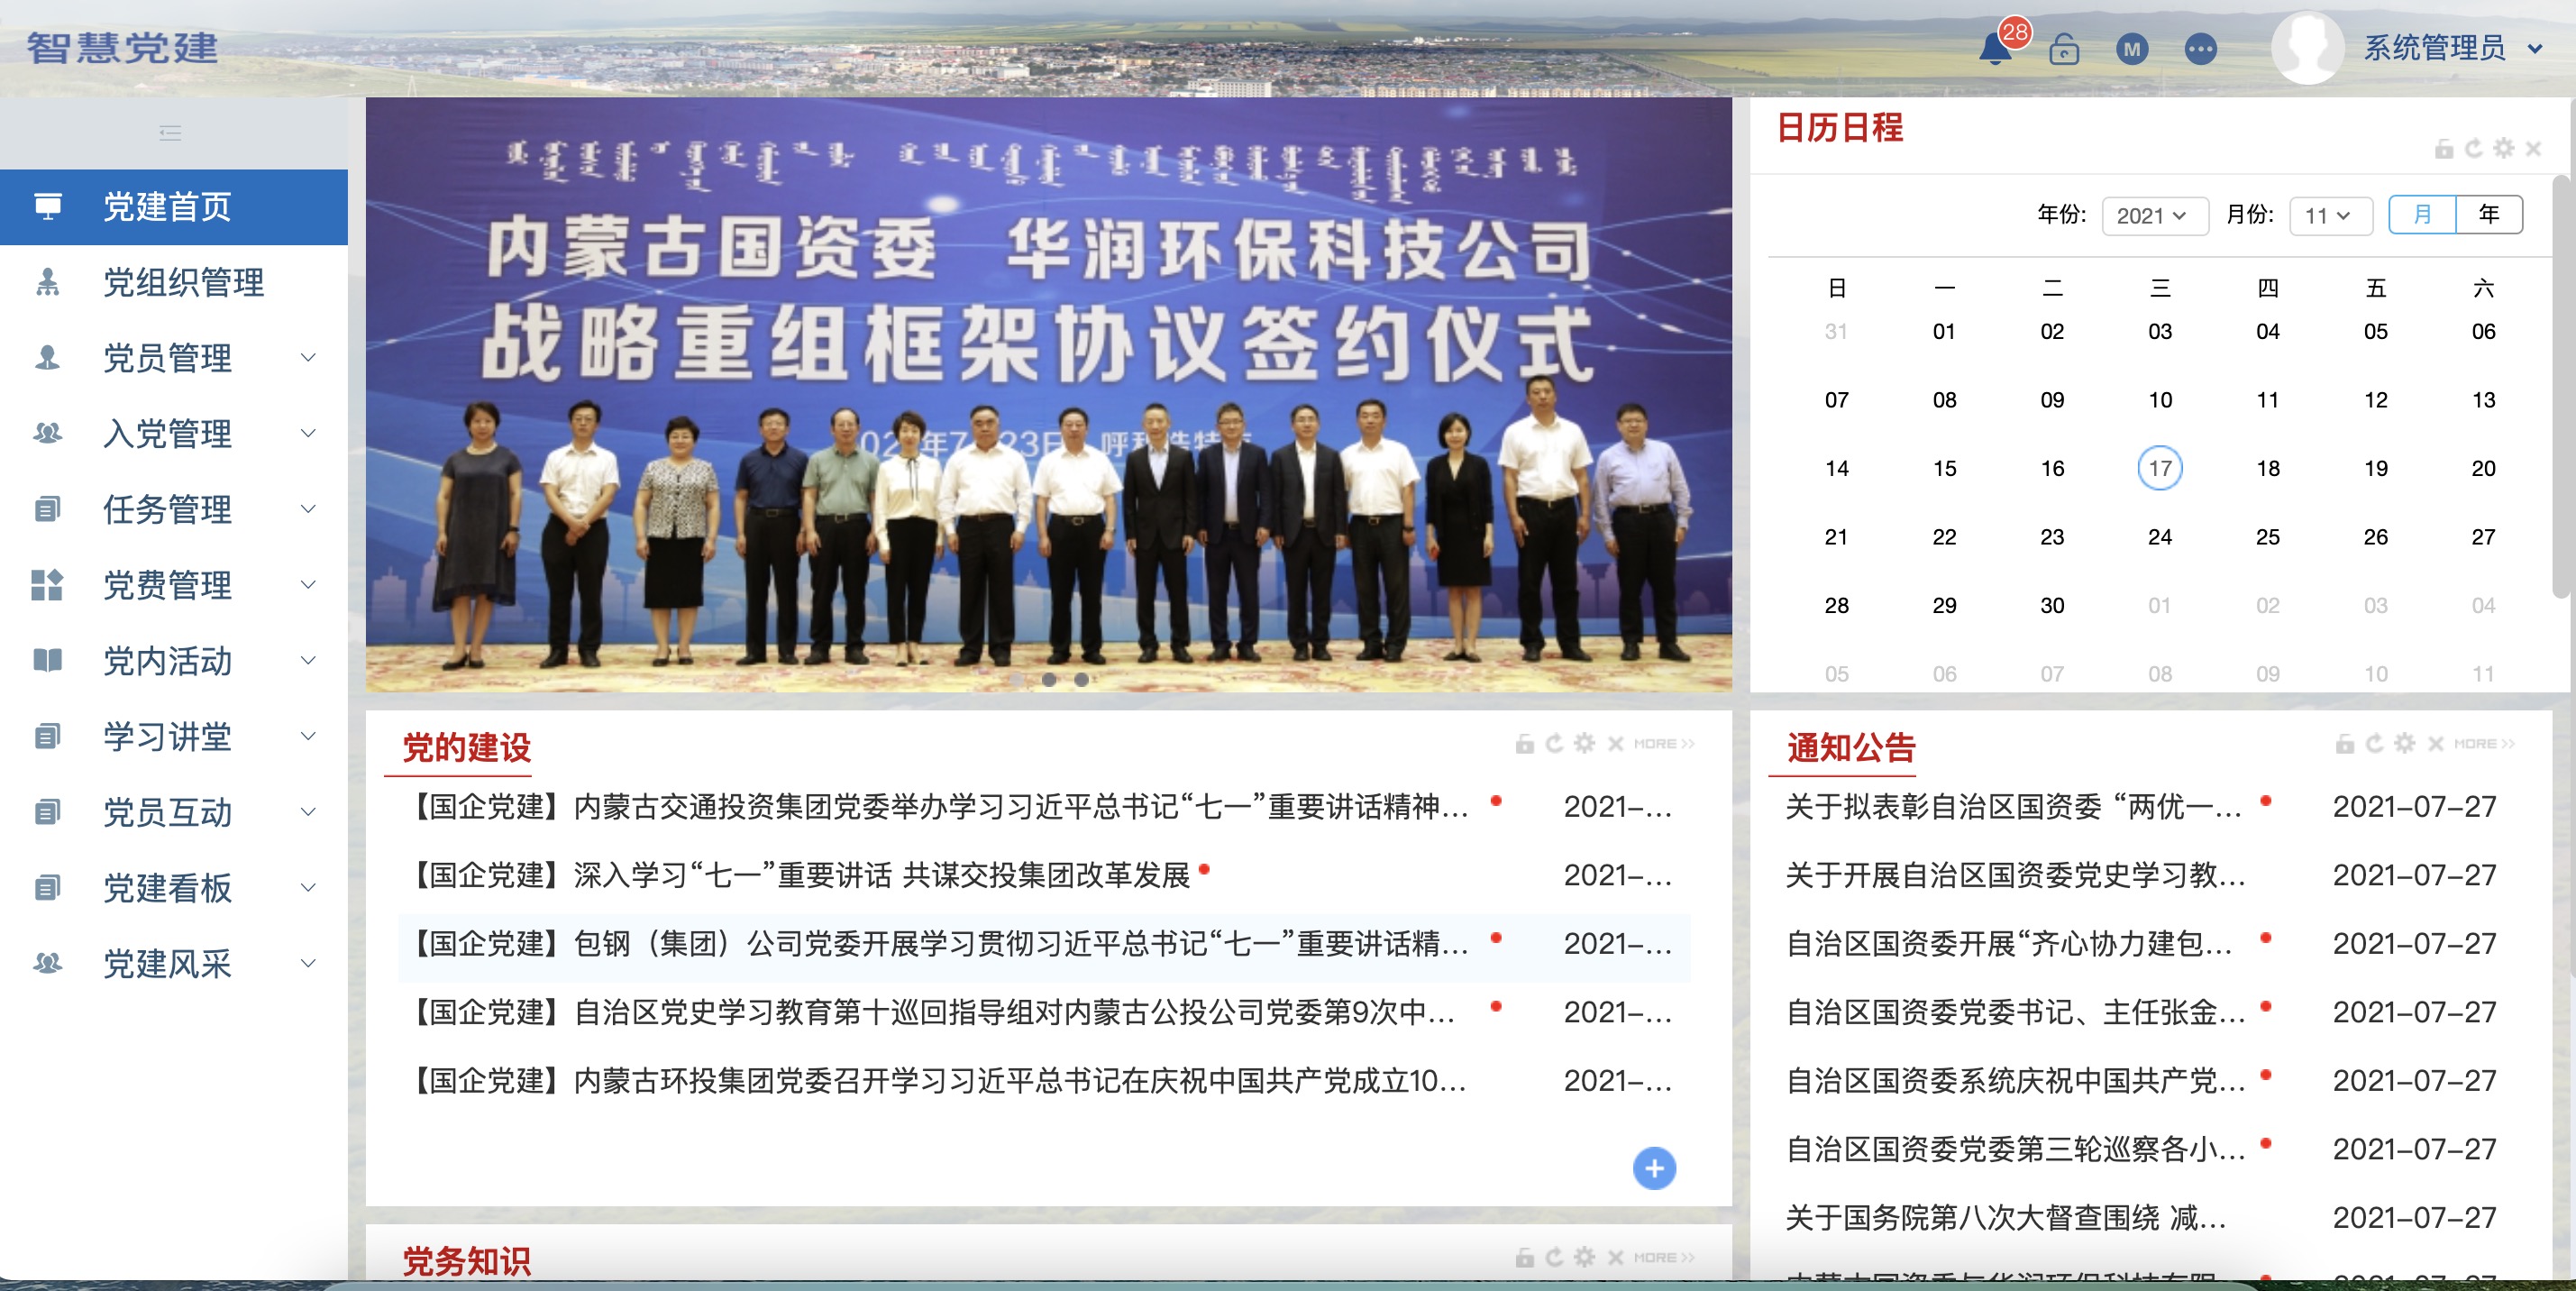 内蒙古自治区国资委智慧党建系统项目